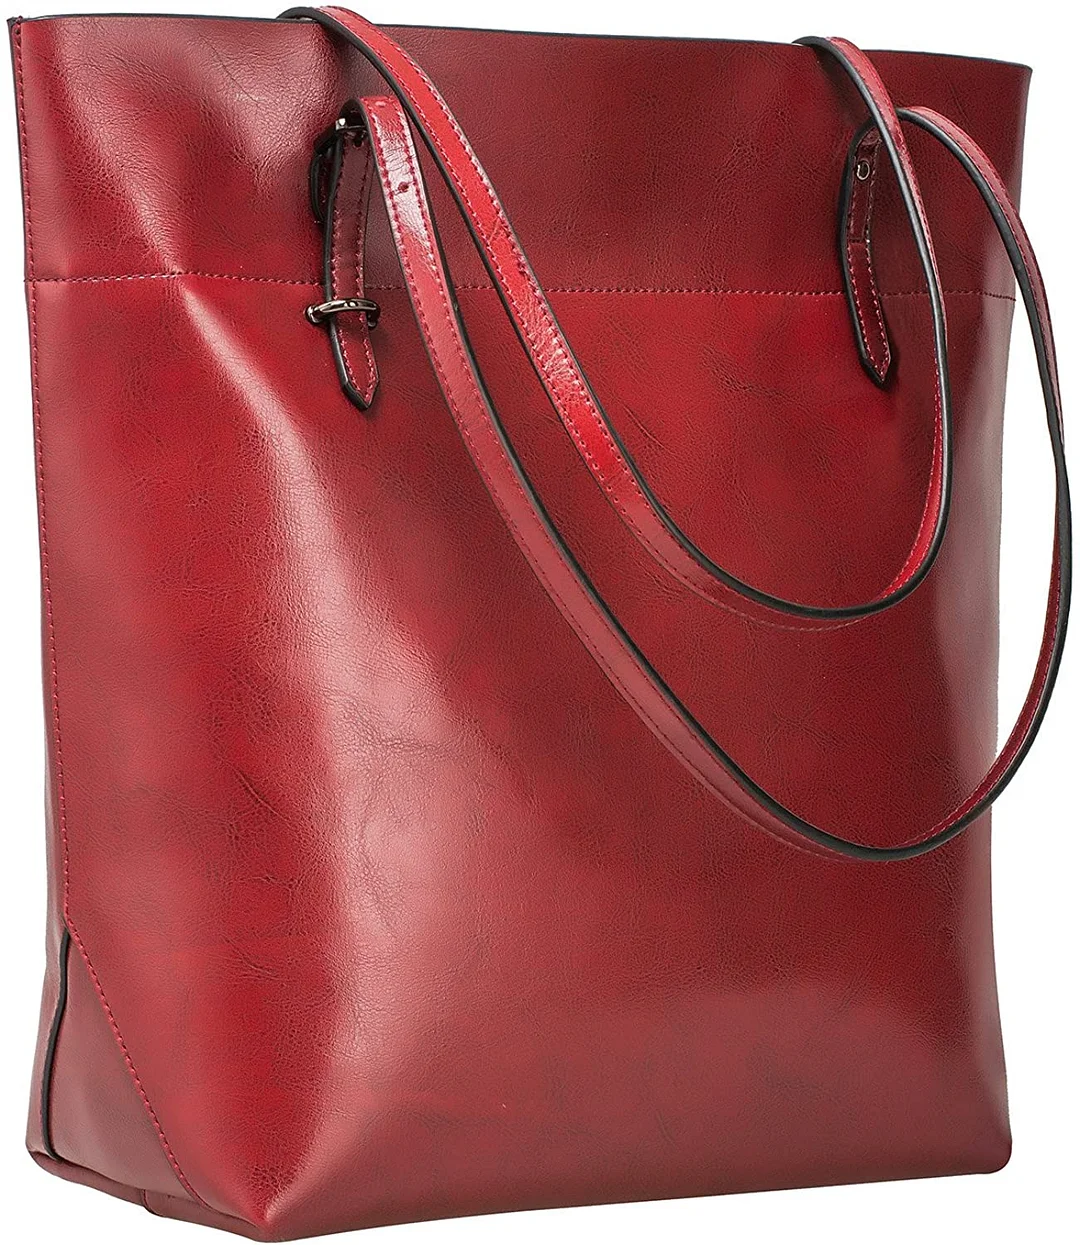 Vintage Genuine Leather Tote Shoulder Bag Handbag Big Large Capacity Upgraded